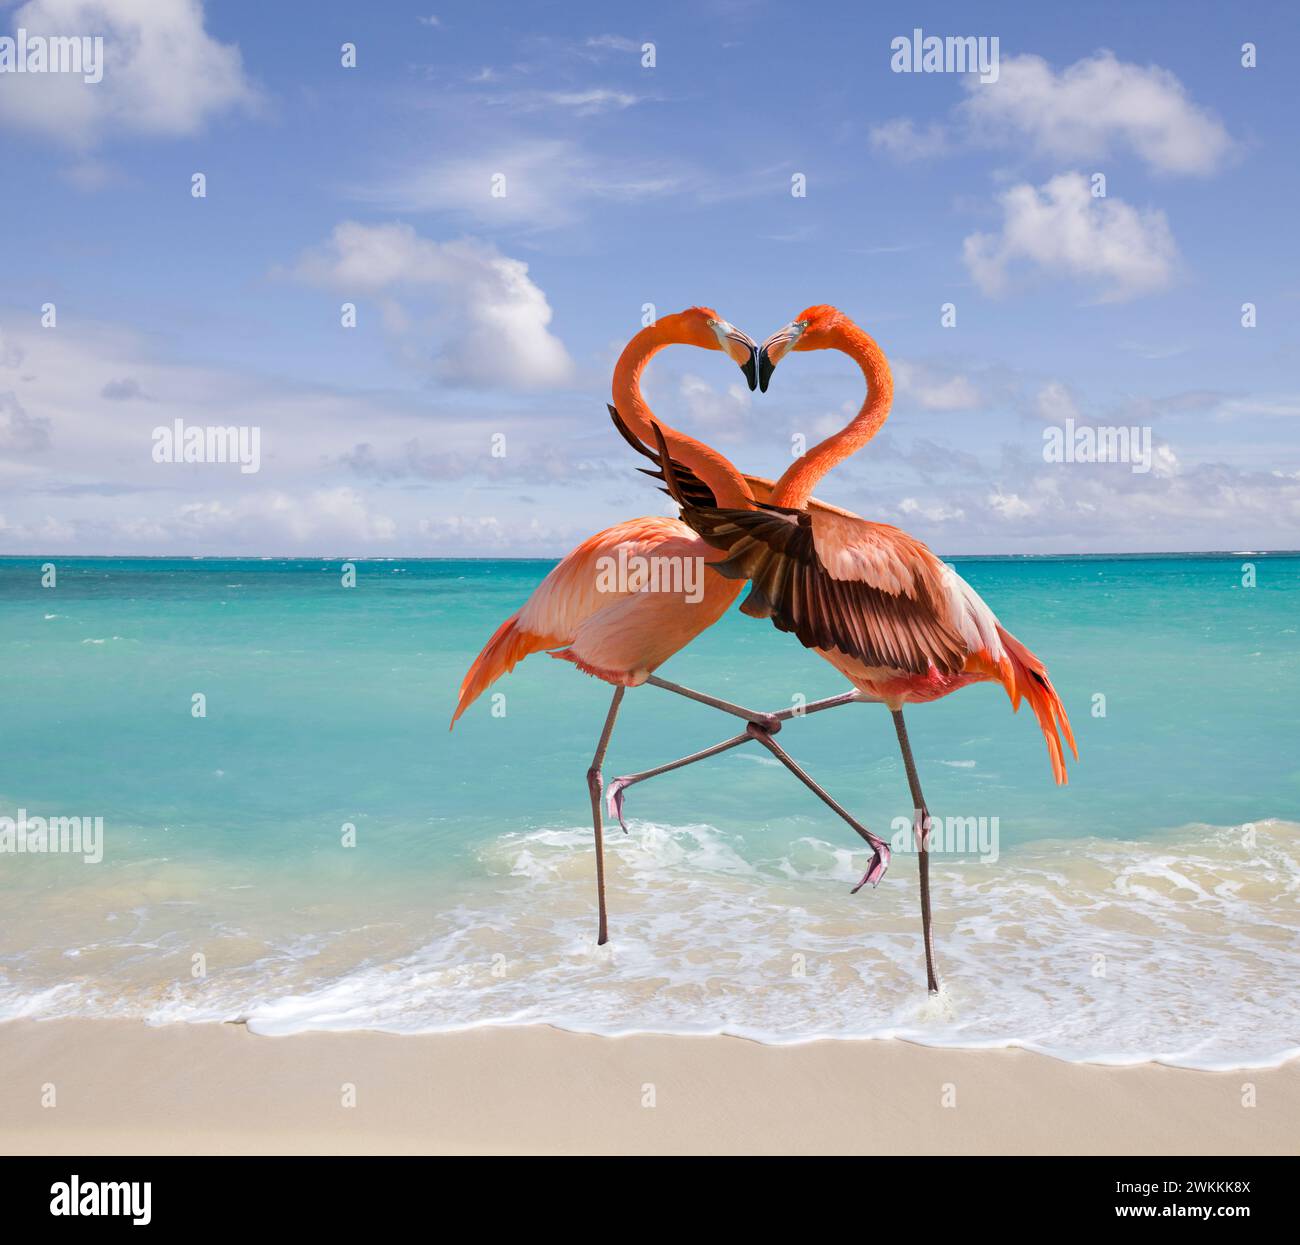 Deux flamants roses embrassent sur une plage avec leur cou formant une forme de coeur dans une image animale drôle sur l'amour, la romance et les relations. Banque D'Images